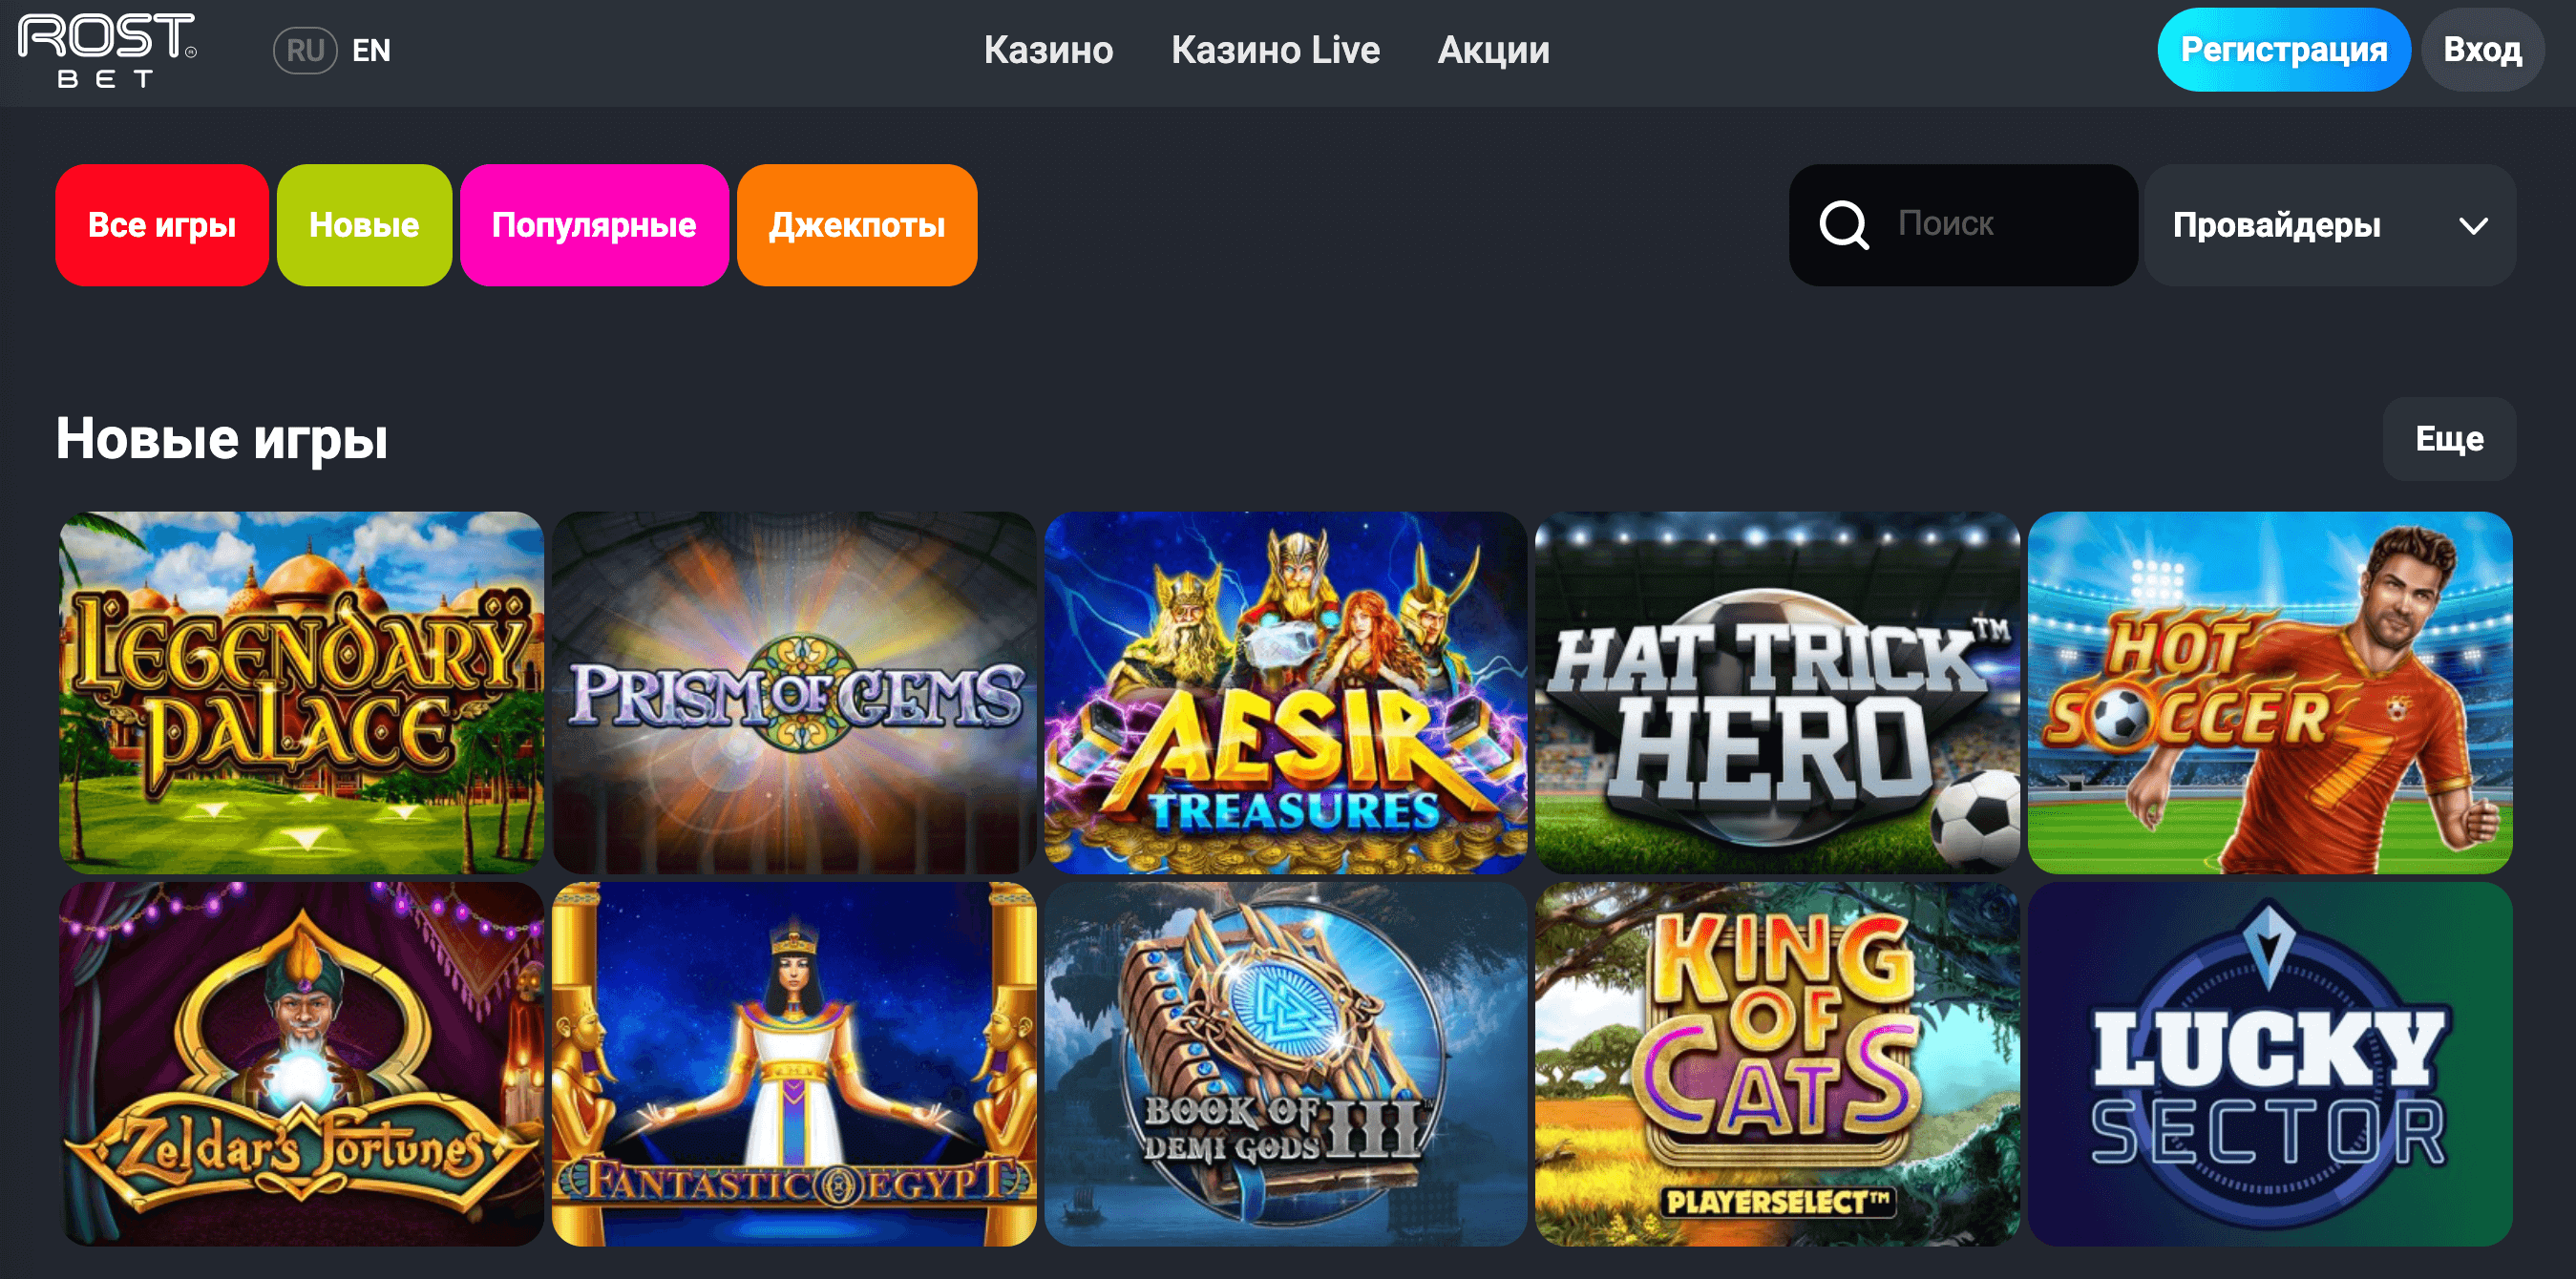 casino rostbet официальный сайт